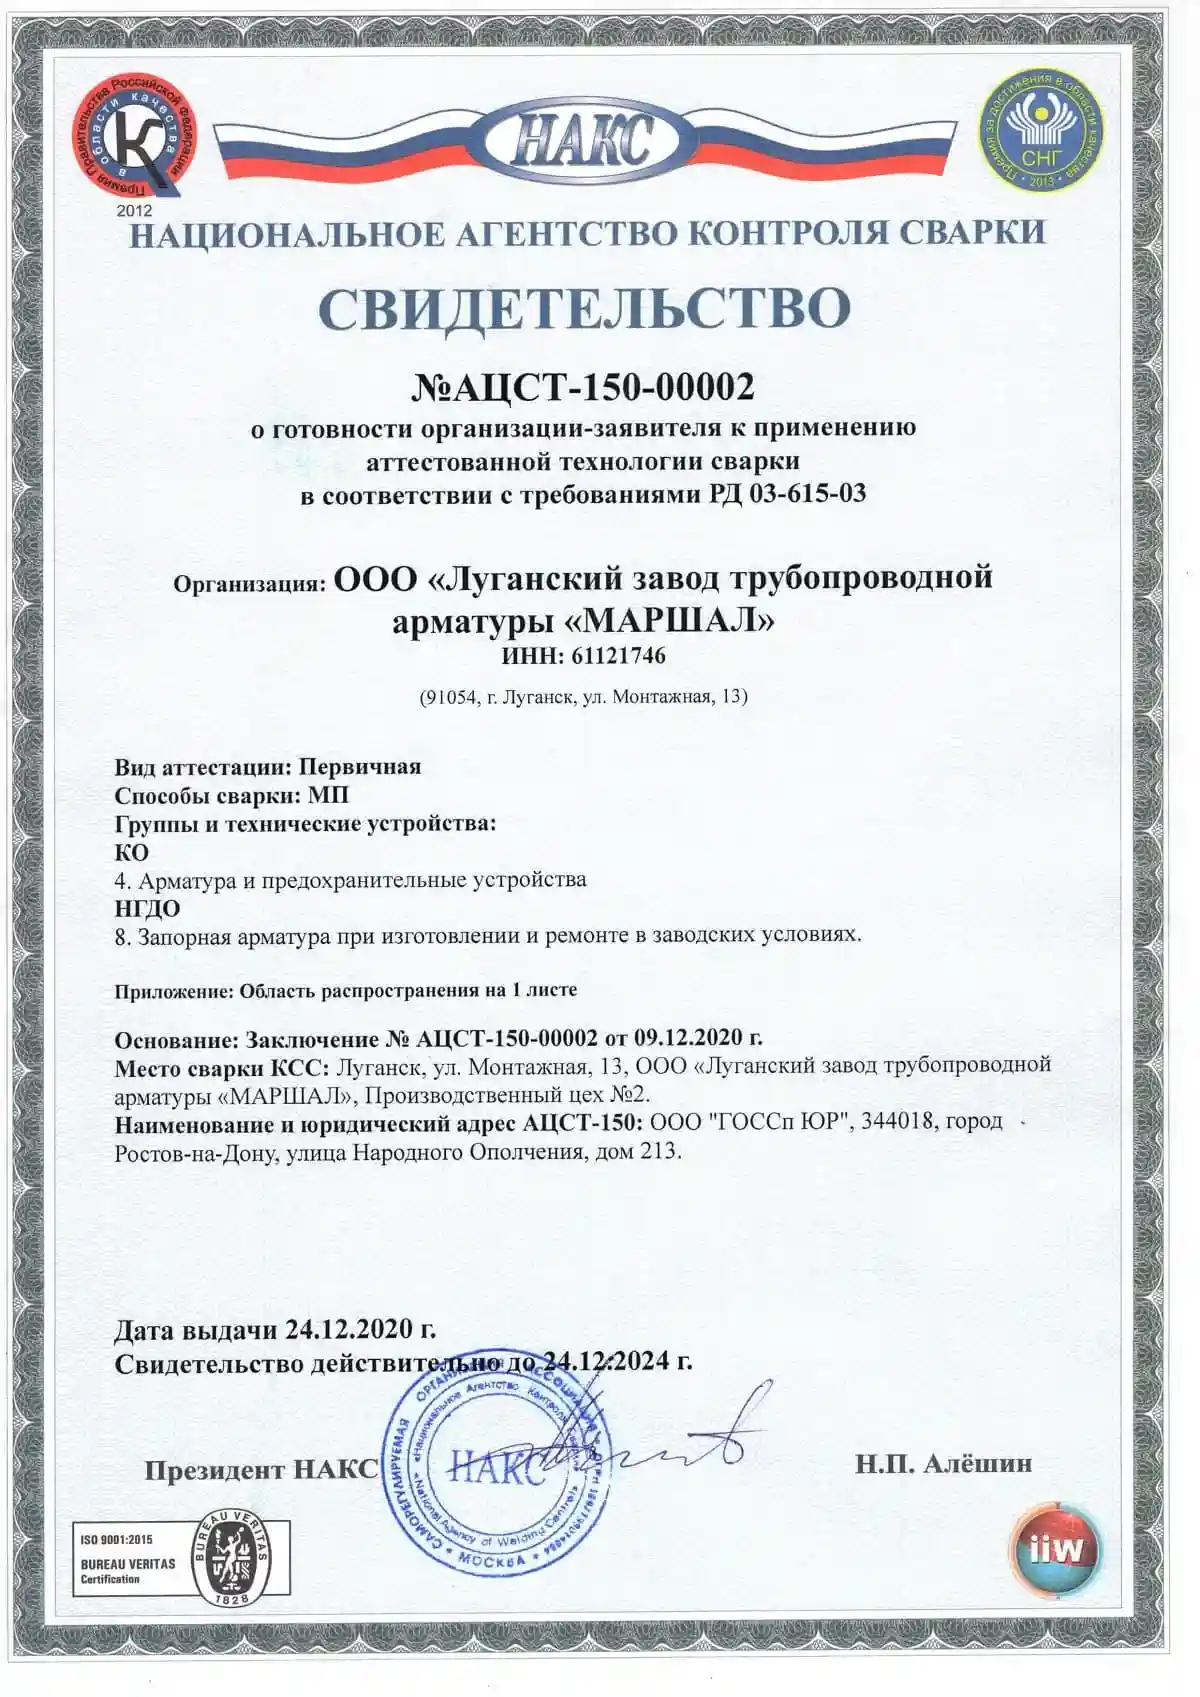 Сертификат Национального агентства сварки АЦСТ-150-00002 о соответствии требованиям РД 03-615-03. Срок действия 22.12.2024